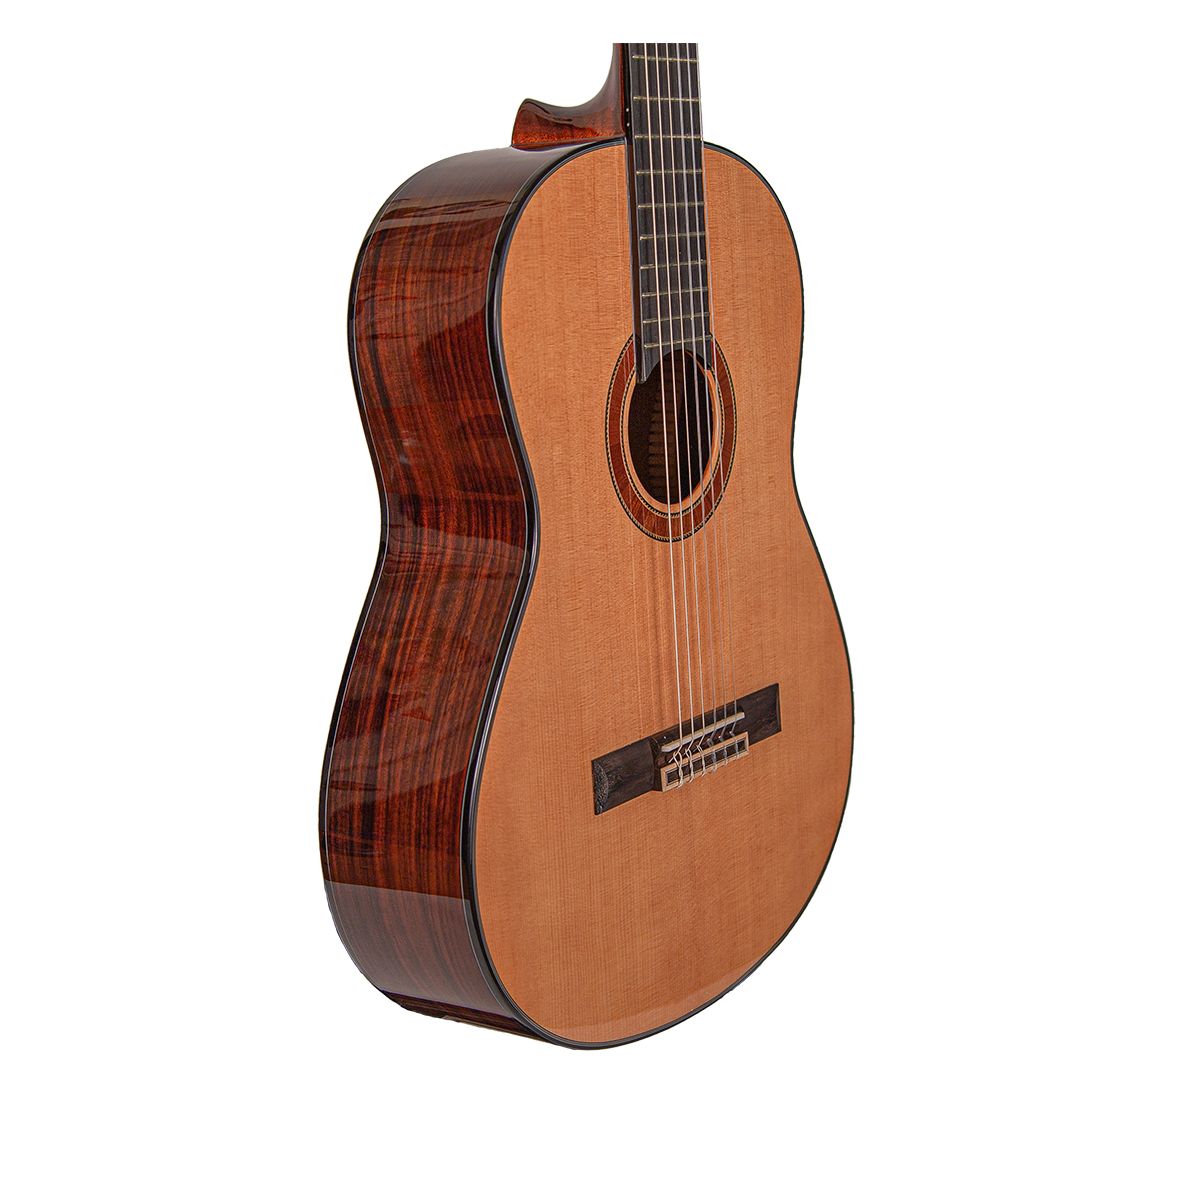 OMNI CG-710YS классическая гитара, массив ели/палисандр, Накладка Палисандр, Цвет натуральный, чехол